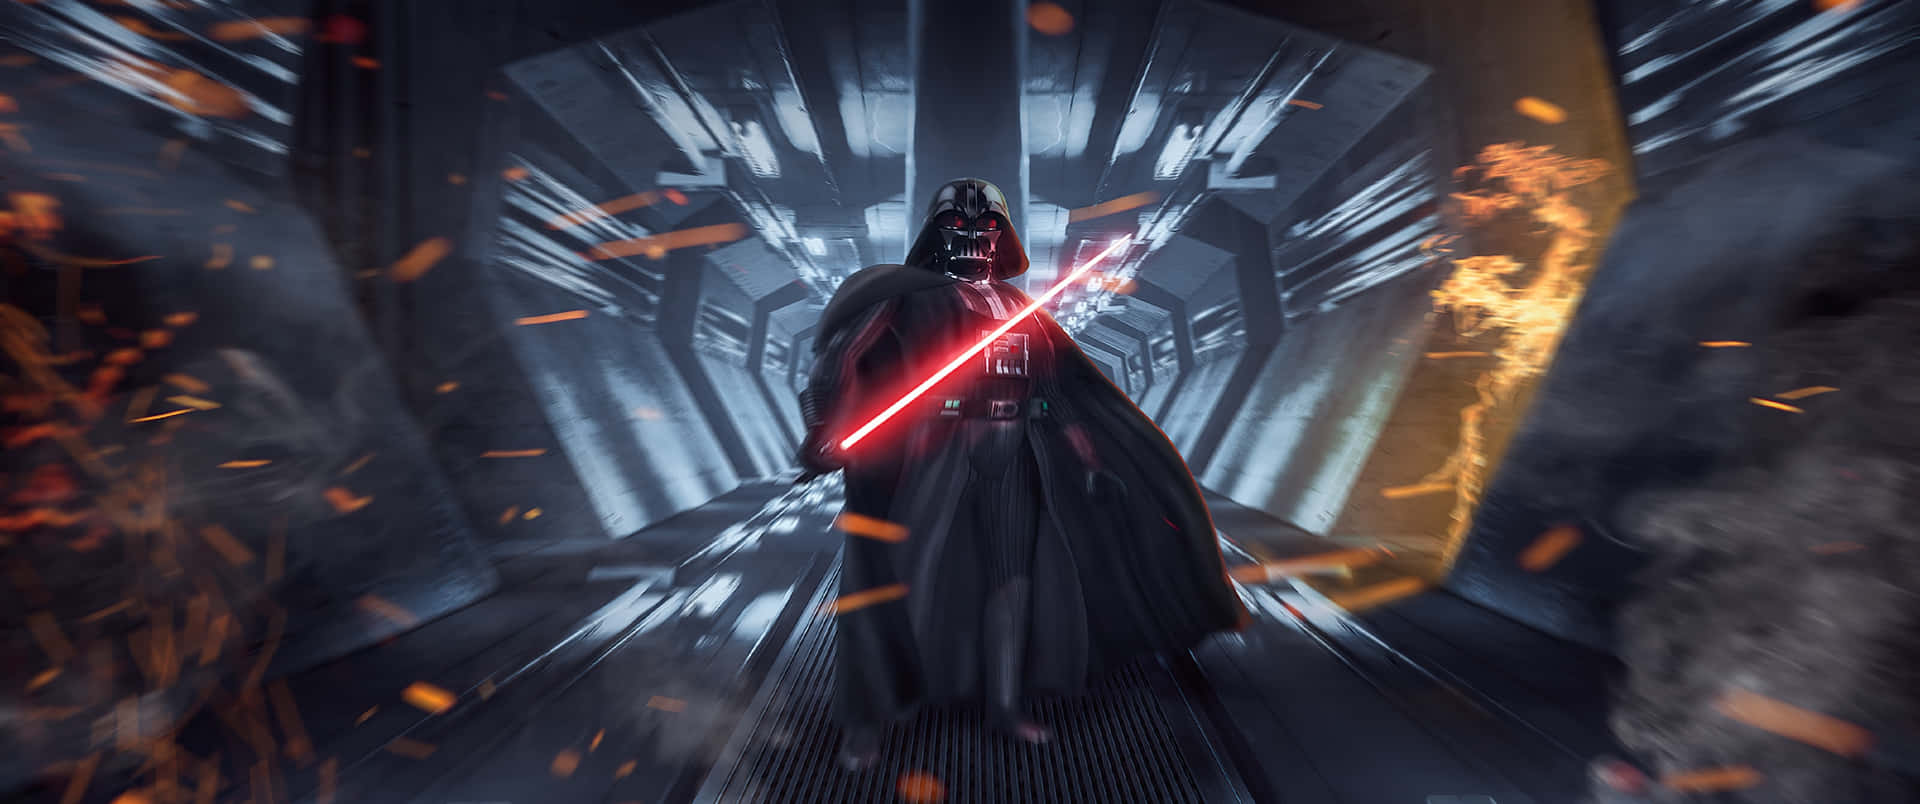 Darth_ Vader_ Action_ Ultra_ Wide.jpg Wallpaper